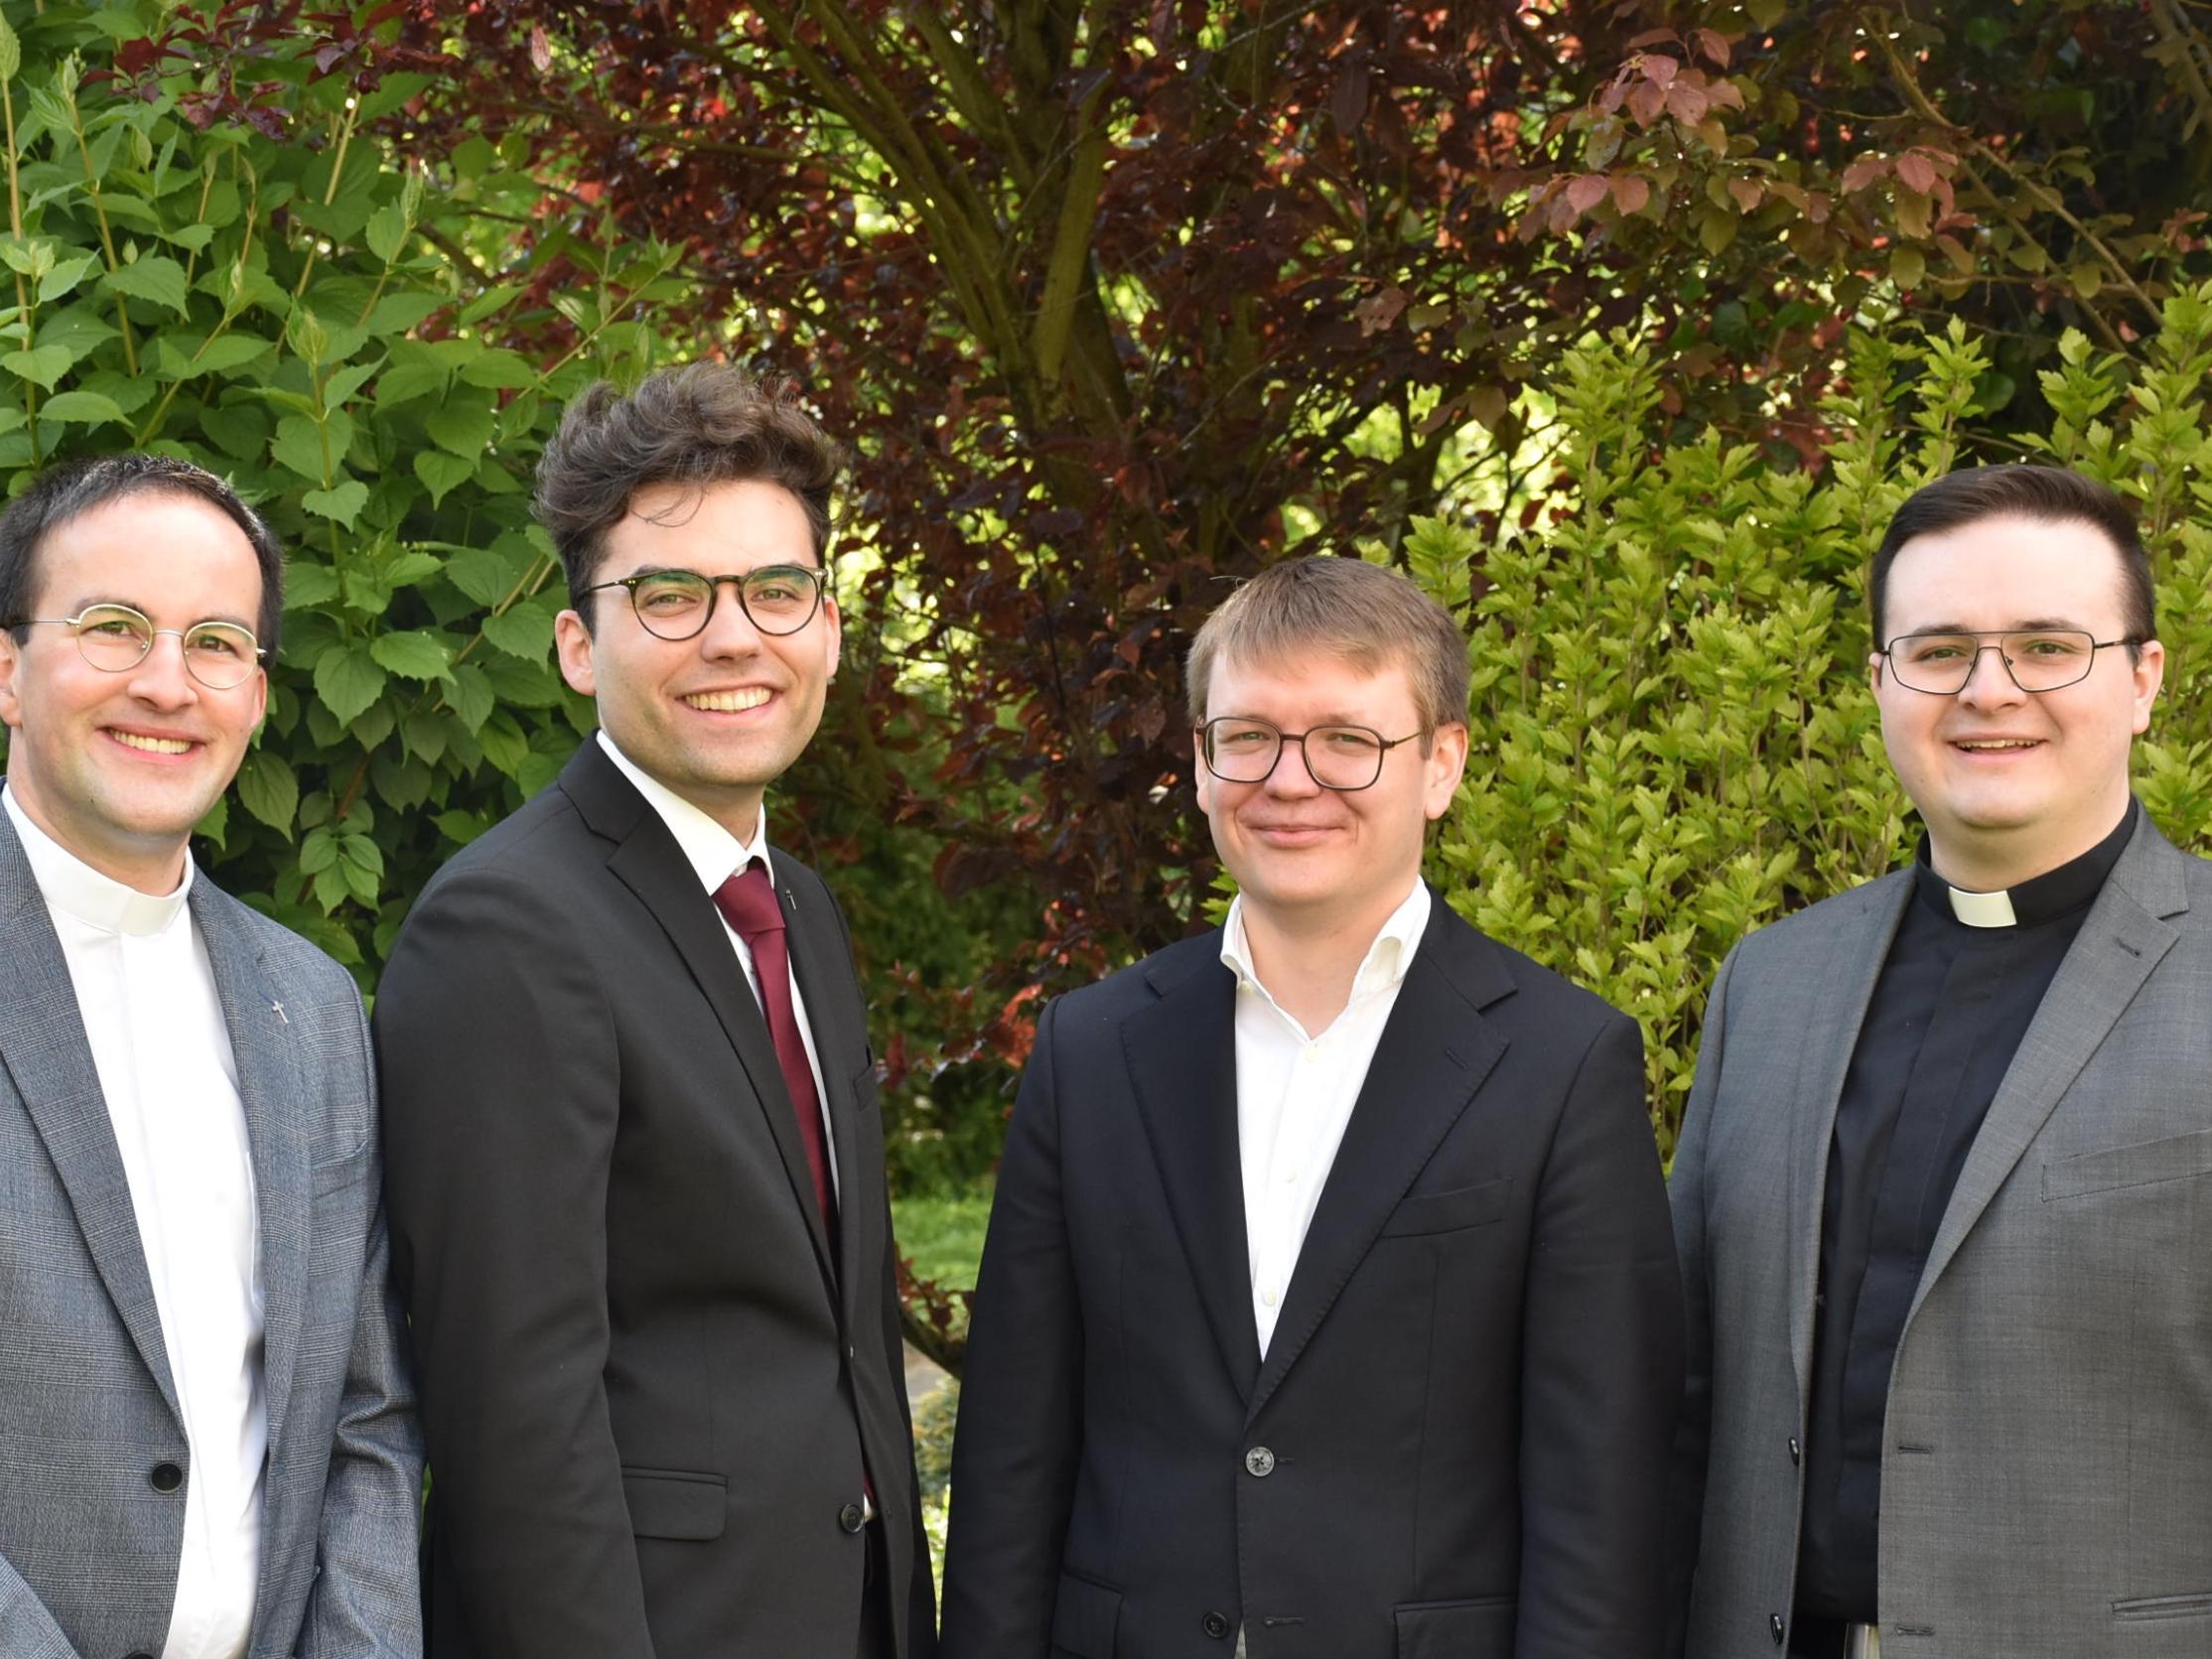 Jens Bauer, Christian Jager, Pascal Nicolas Klose (empfängt die Priesterweihe am 1. Oktober in Rom) und Adrian Sasmaz (vlnr.)